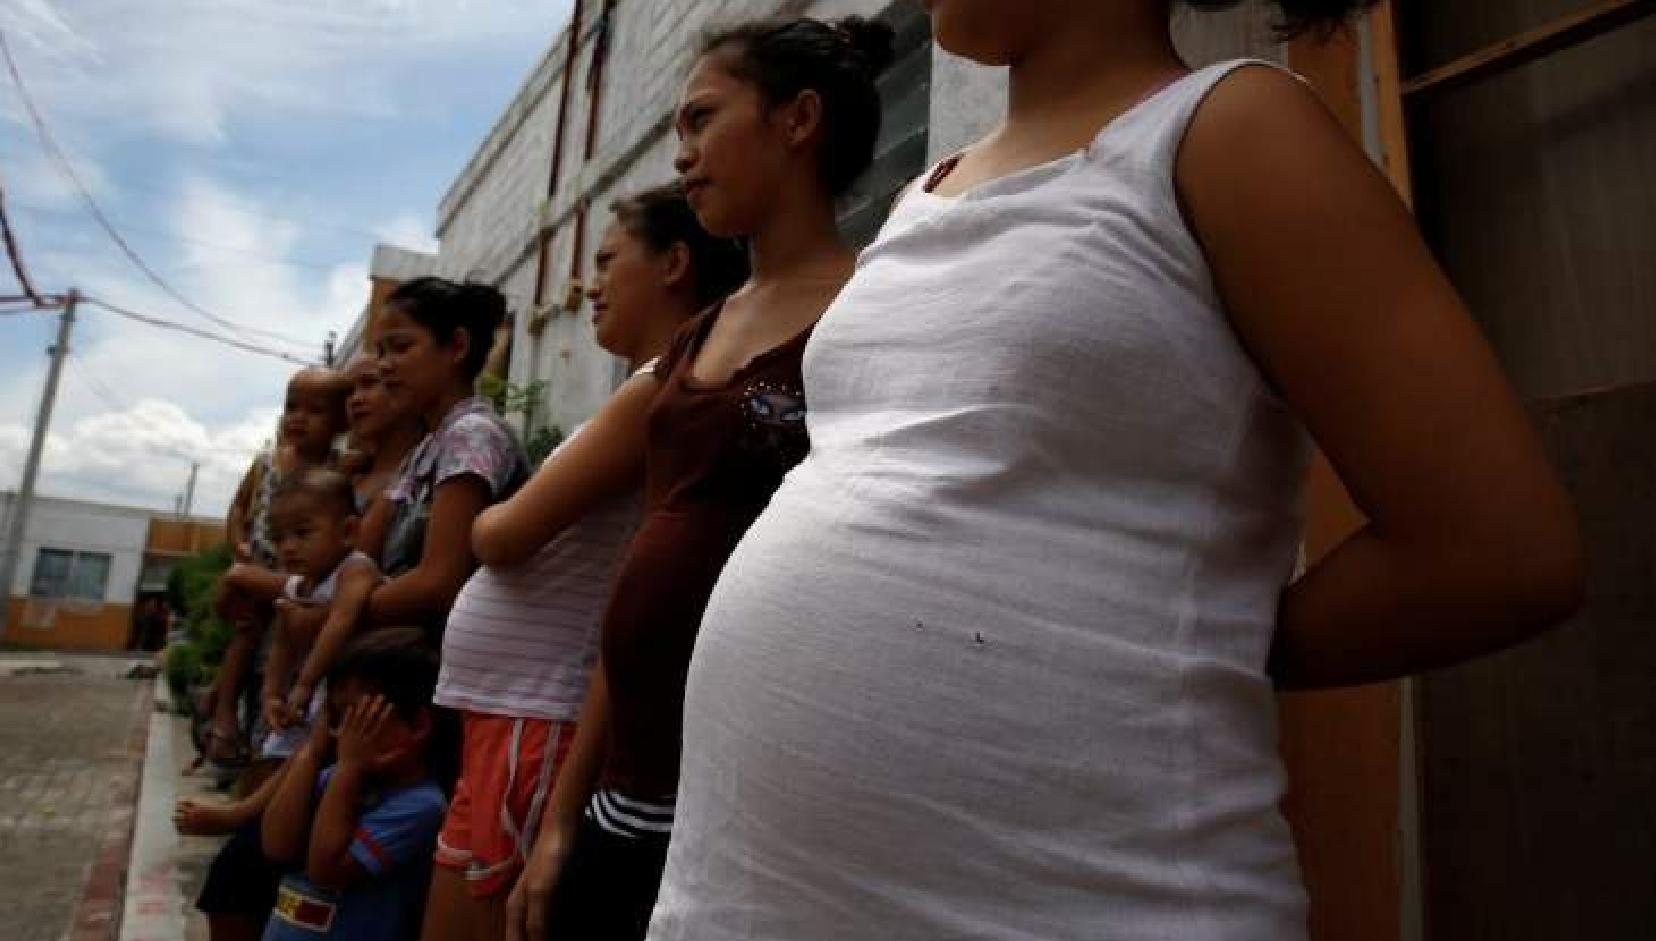 mujer embarazada aborto parto a luz personas pobres Kamala Harris senado EU aborto embarazadas